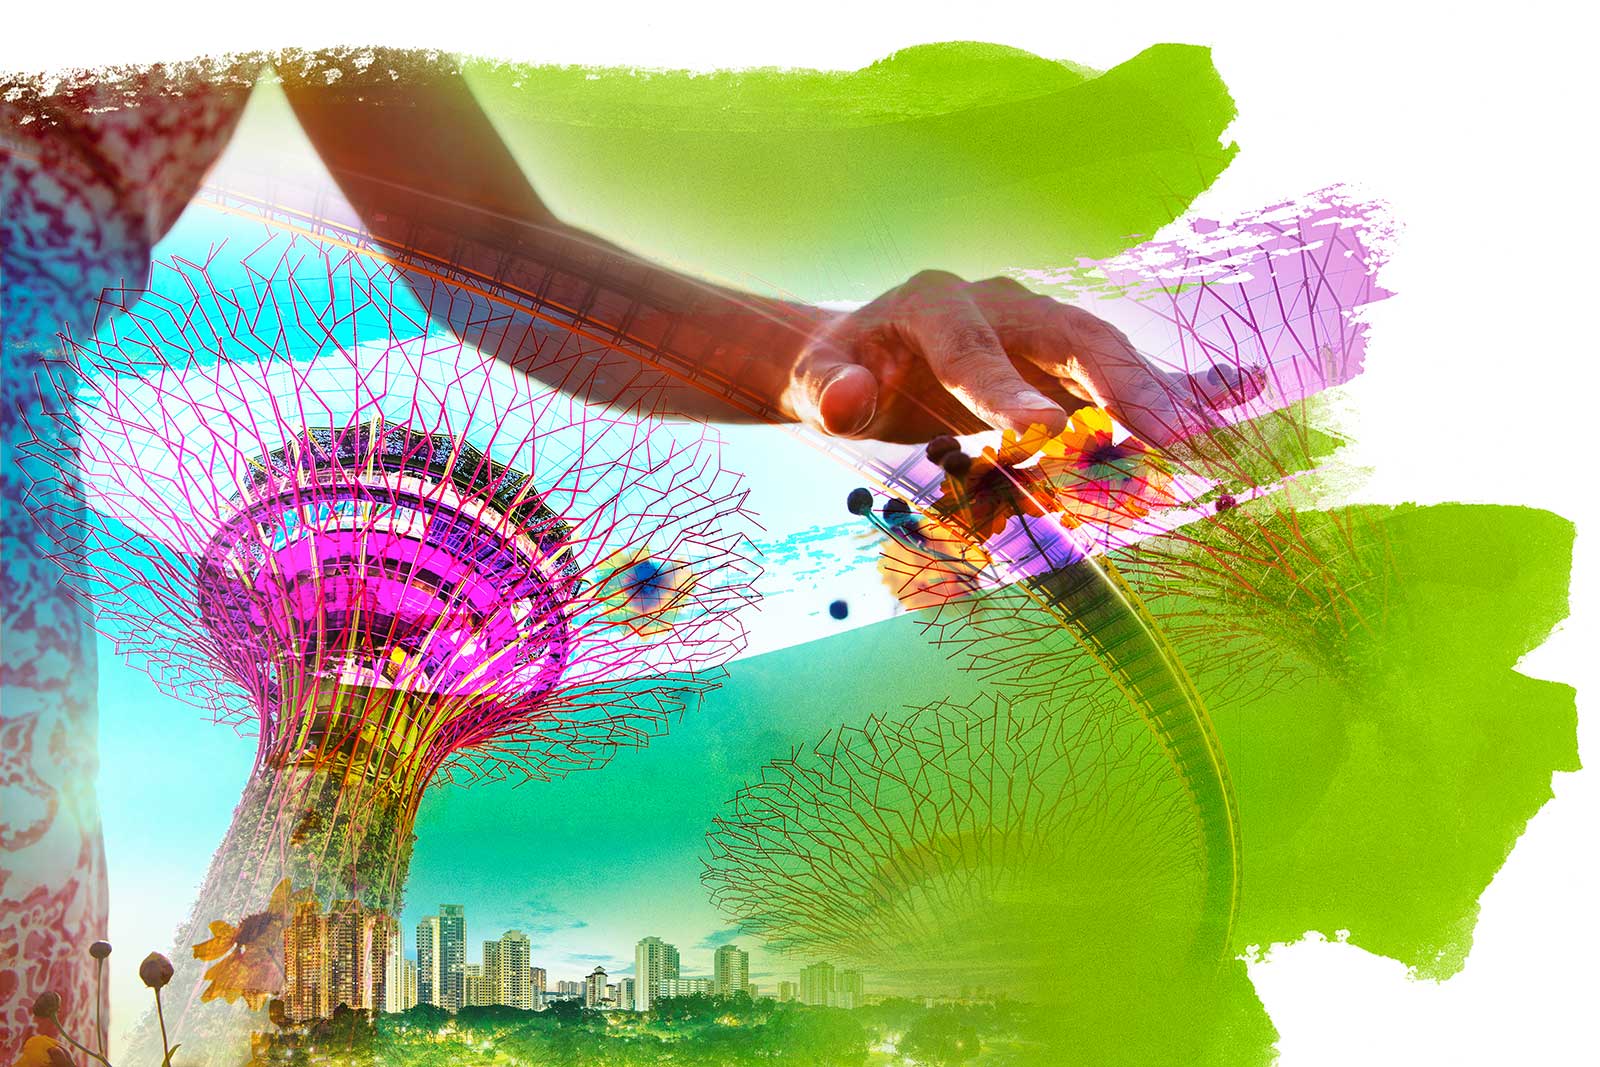 Singapurs Zukunftspläne - Alles im grünen Bereich